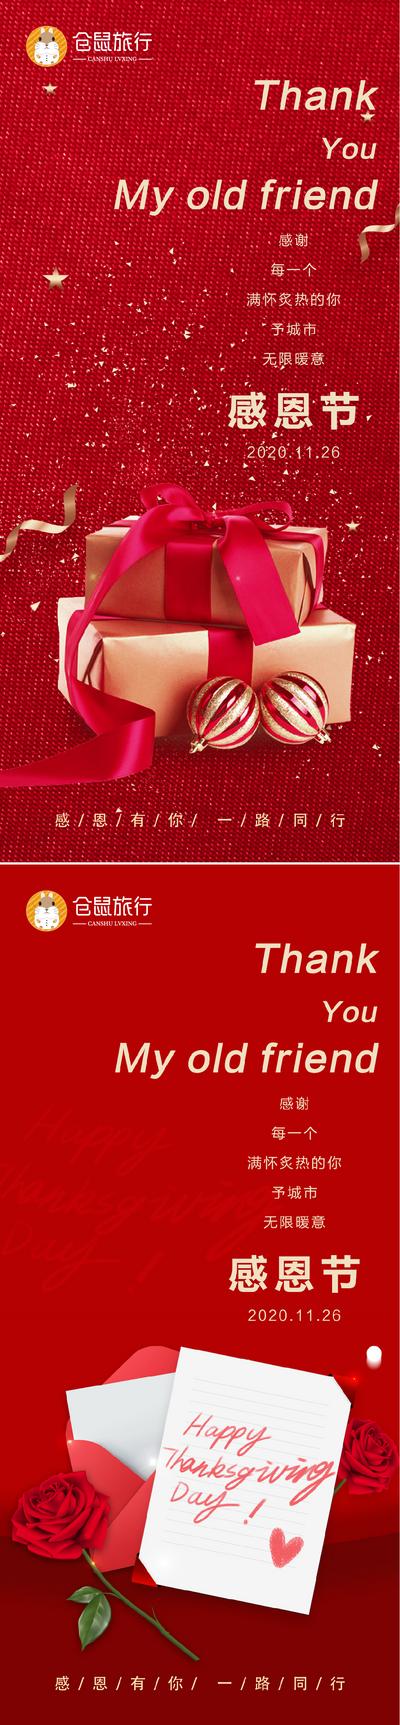 南门网 海报 公历节日 感恩节 礼盒 信封 玫瑰